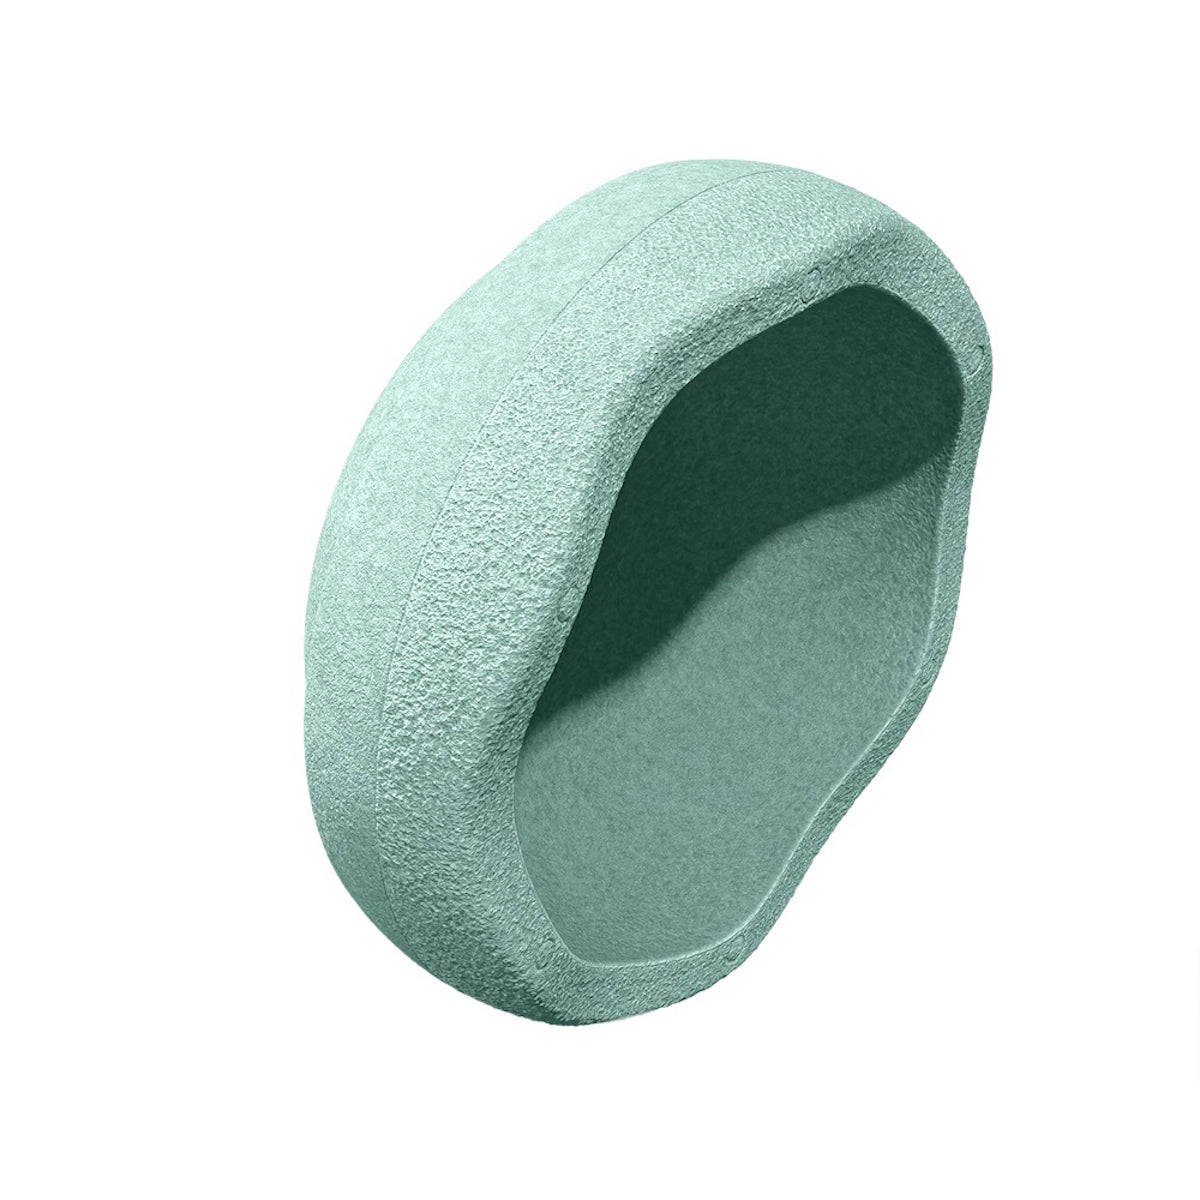 Stapelstein Original mint is het perfecte, duurzame, open einde speelgoed. Gebruik de steen om te balanceren, te bouwen of als krukje of opstapje; de mogelijkheden zijn eindeloos. VanZus.